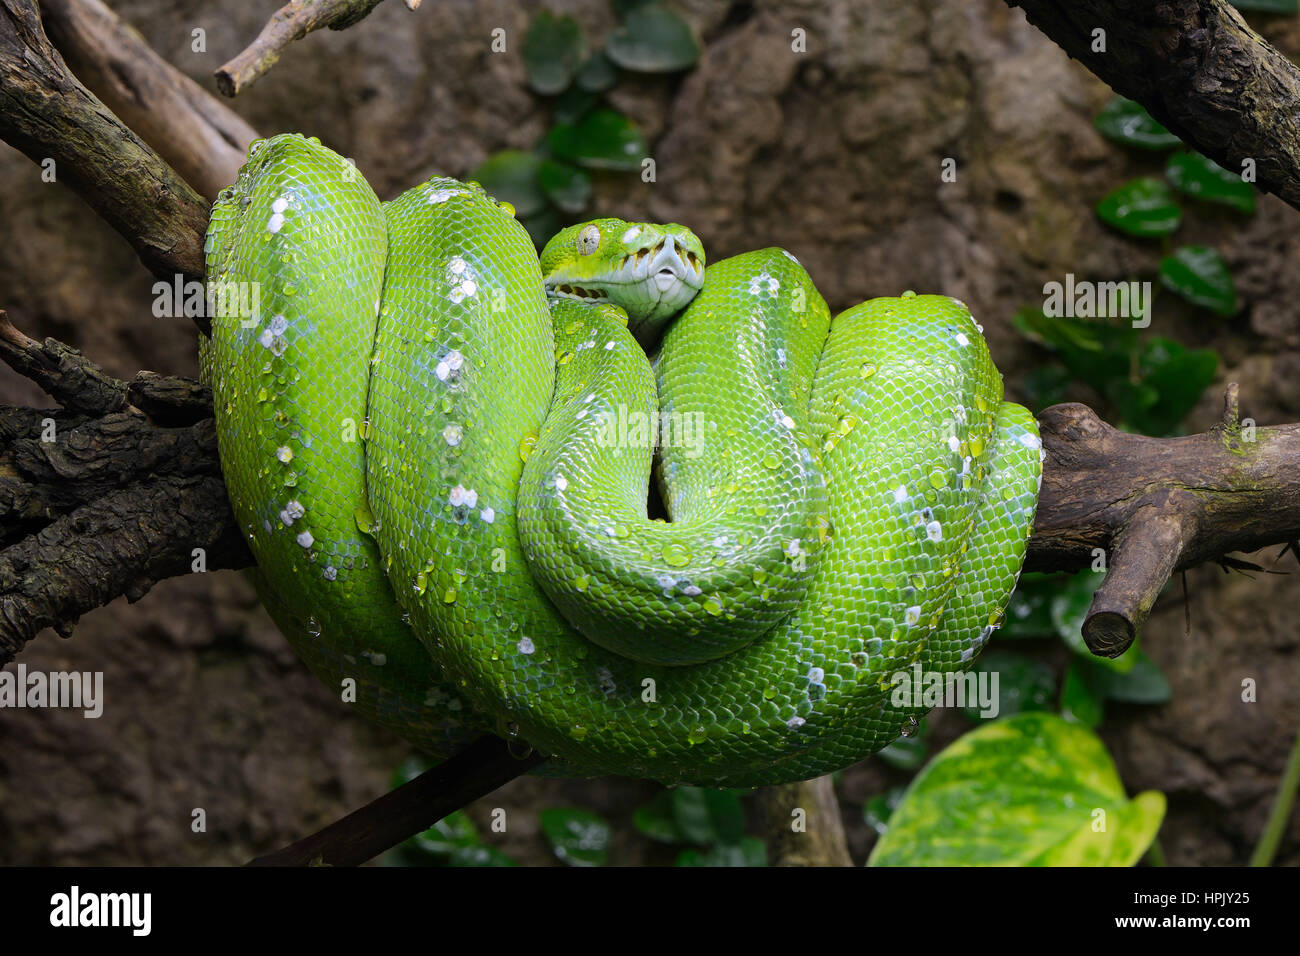 Green Tree python (Morelia viridis), suspendu à l'arbre, captive, l'occurrence de l'Asie, l'Australie Banque D'Images